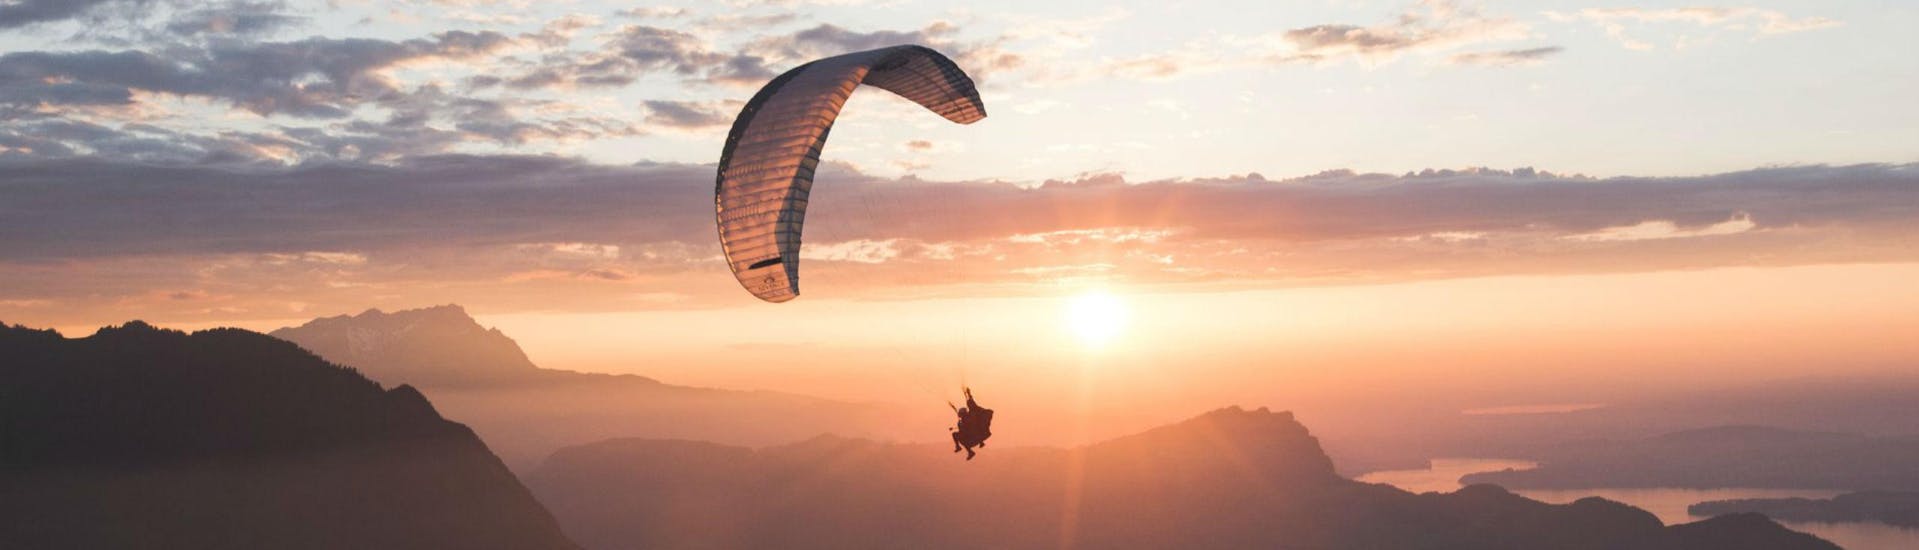 Zwei Personen fliegen bei Sonnenuntergang mit dem Gleitschirm